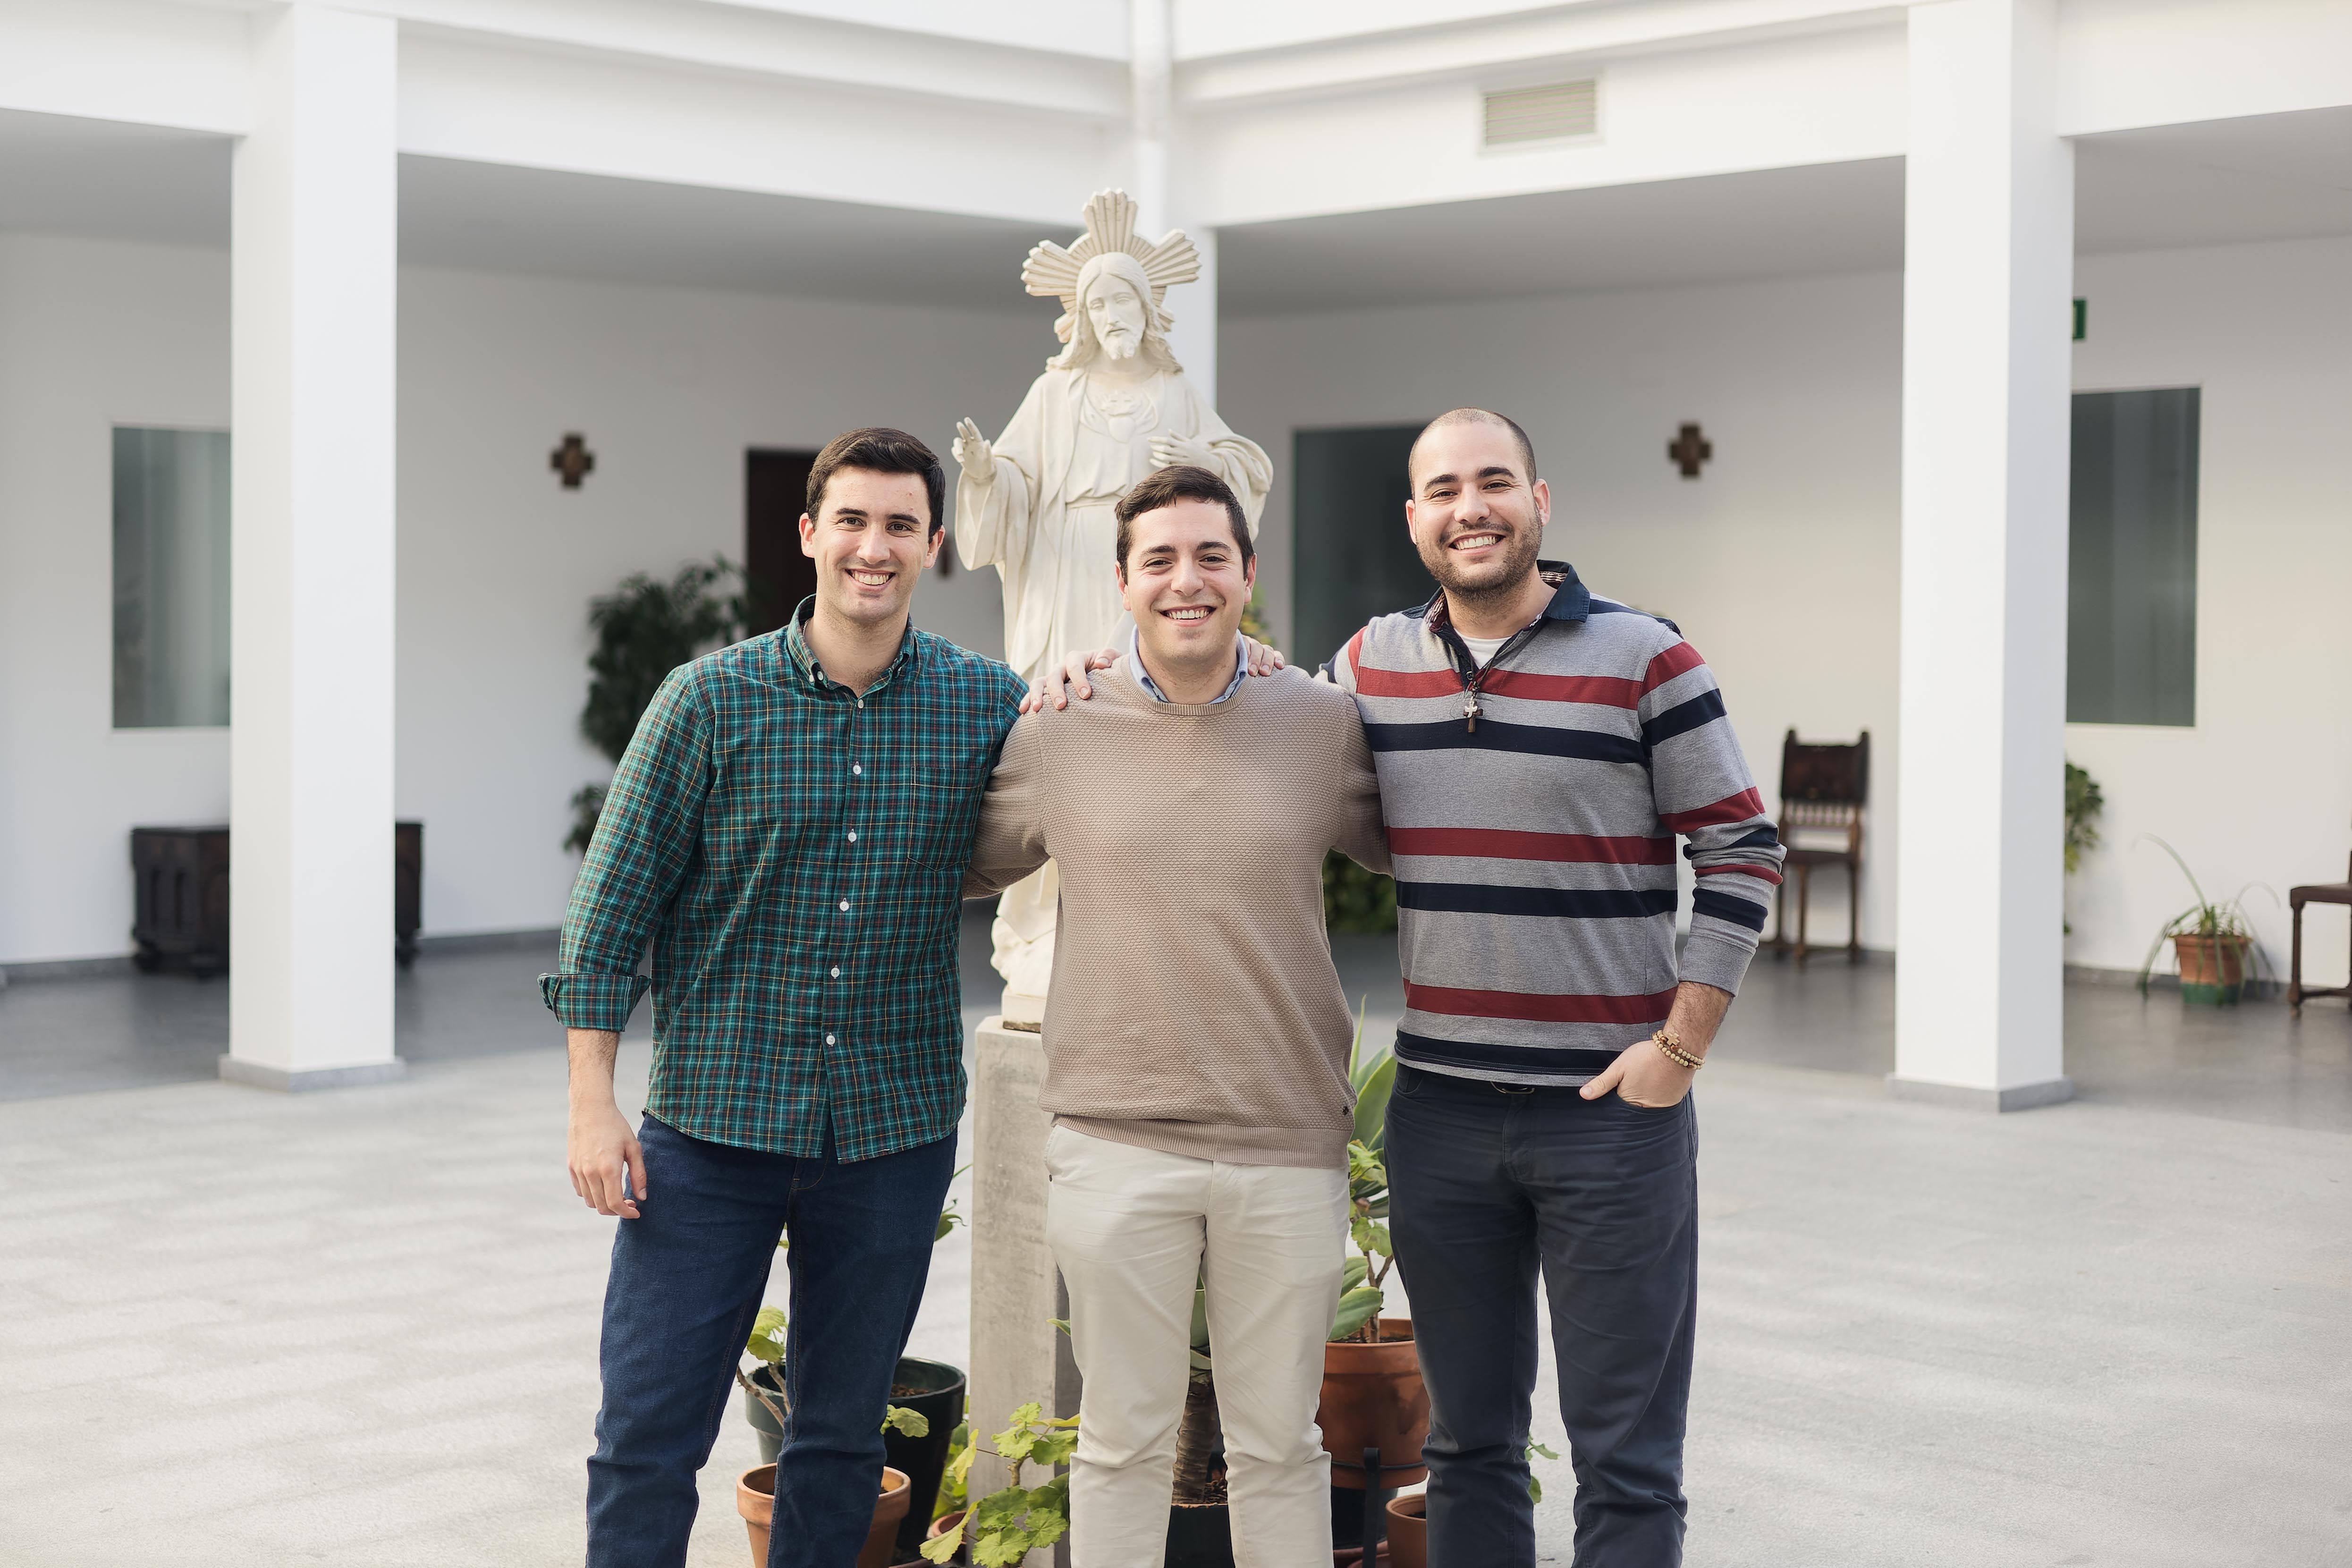 Los seminaristas de la generación Z: "Tenía novia y trabajo, lo dejé todo por seguir la llamada de Dios”. En la imagen, de izquierda a derecha, Juan, Carlos y Pablo.